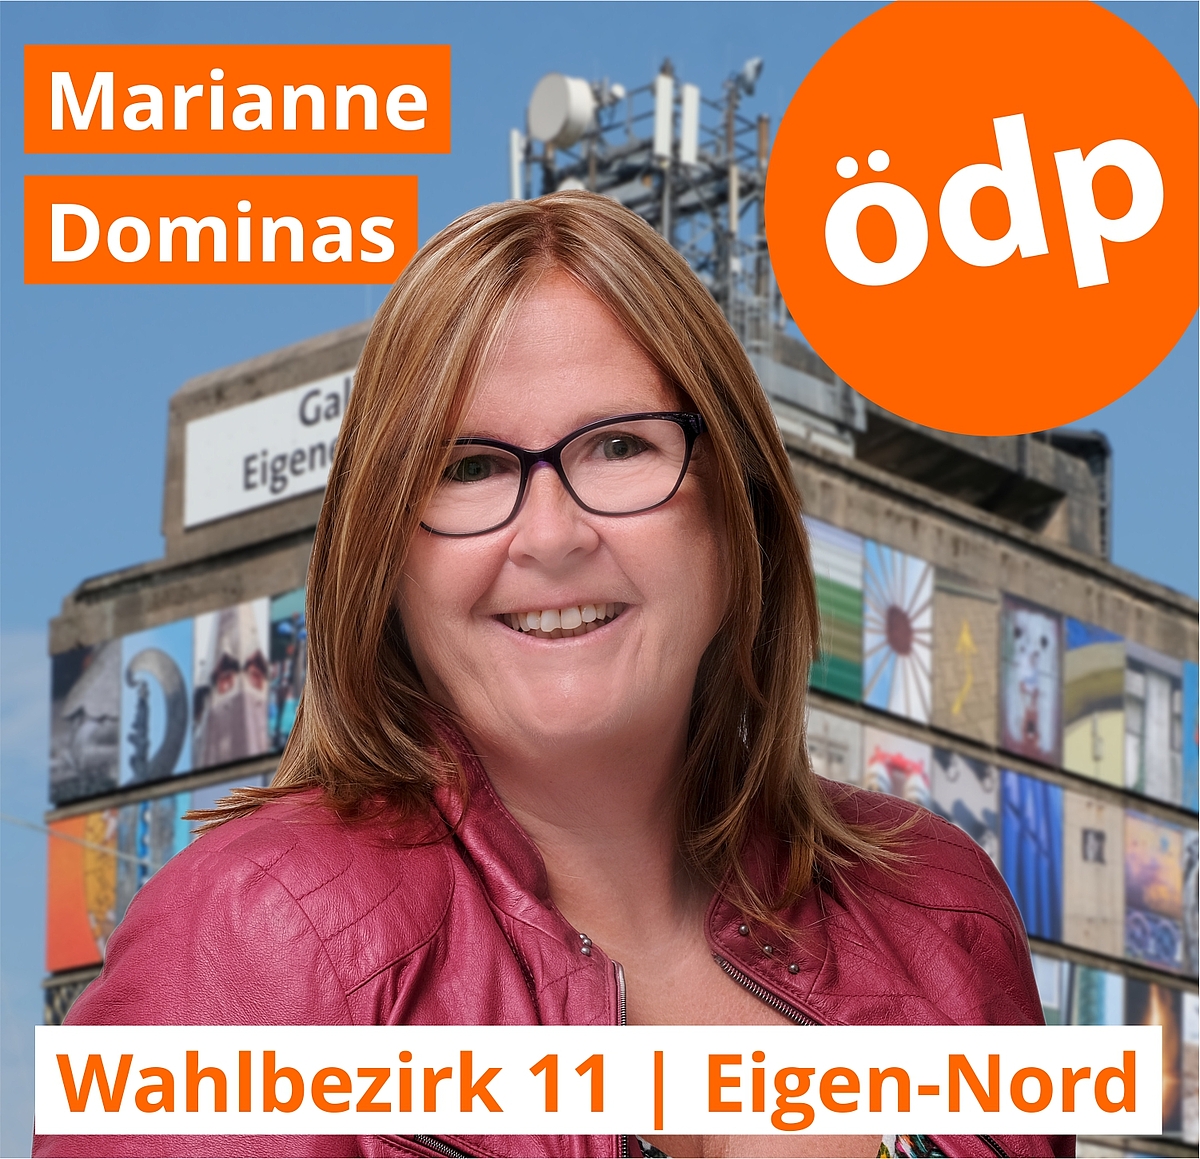 Marianne Dominas | Wahlbezirk 11 | Eigen-Nord